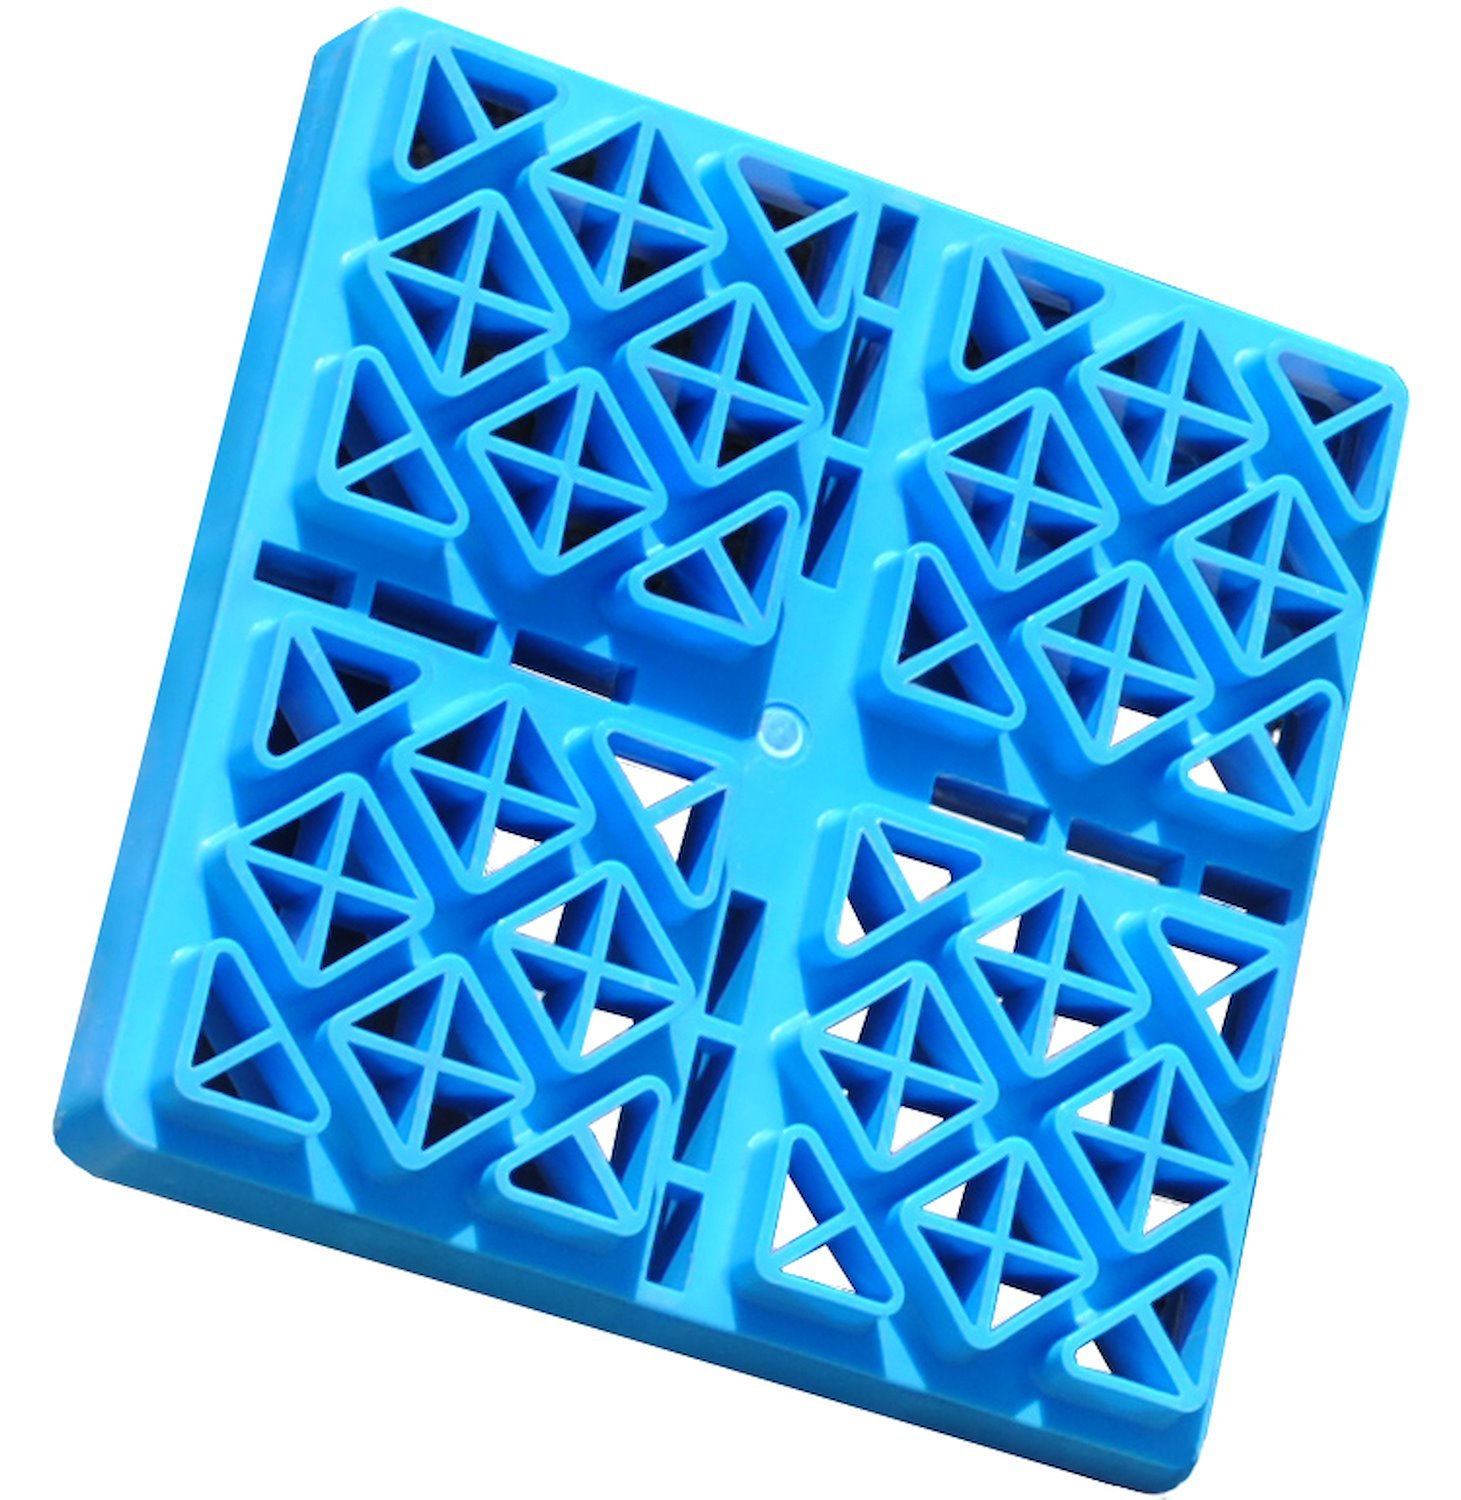 48-979052 Leveling Blocks - Set of 8